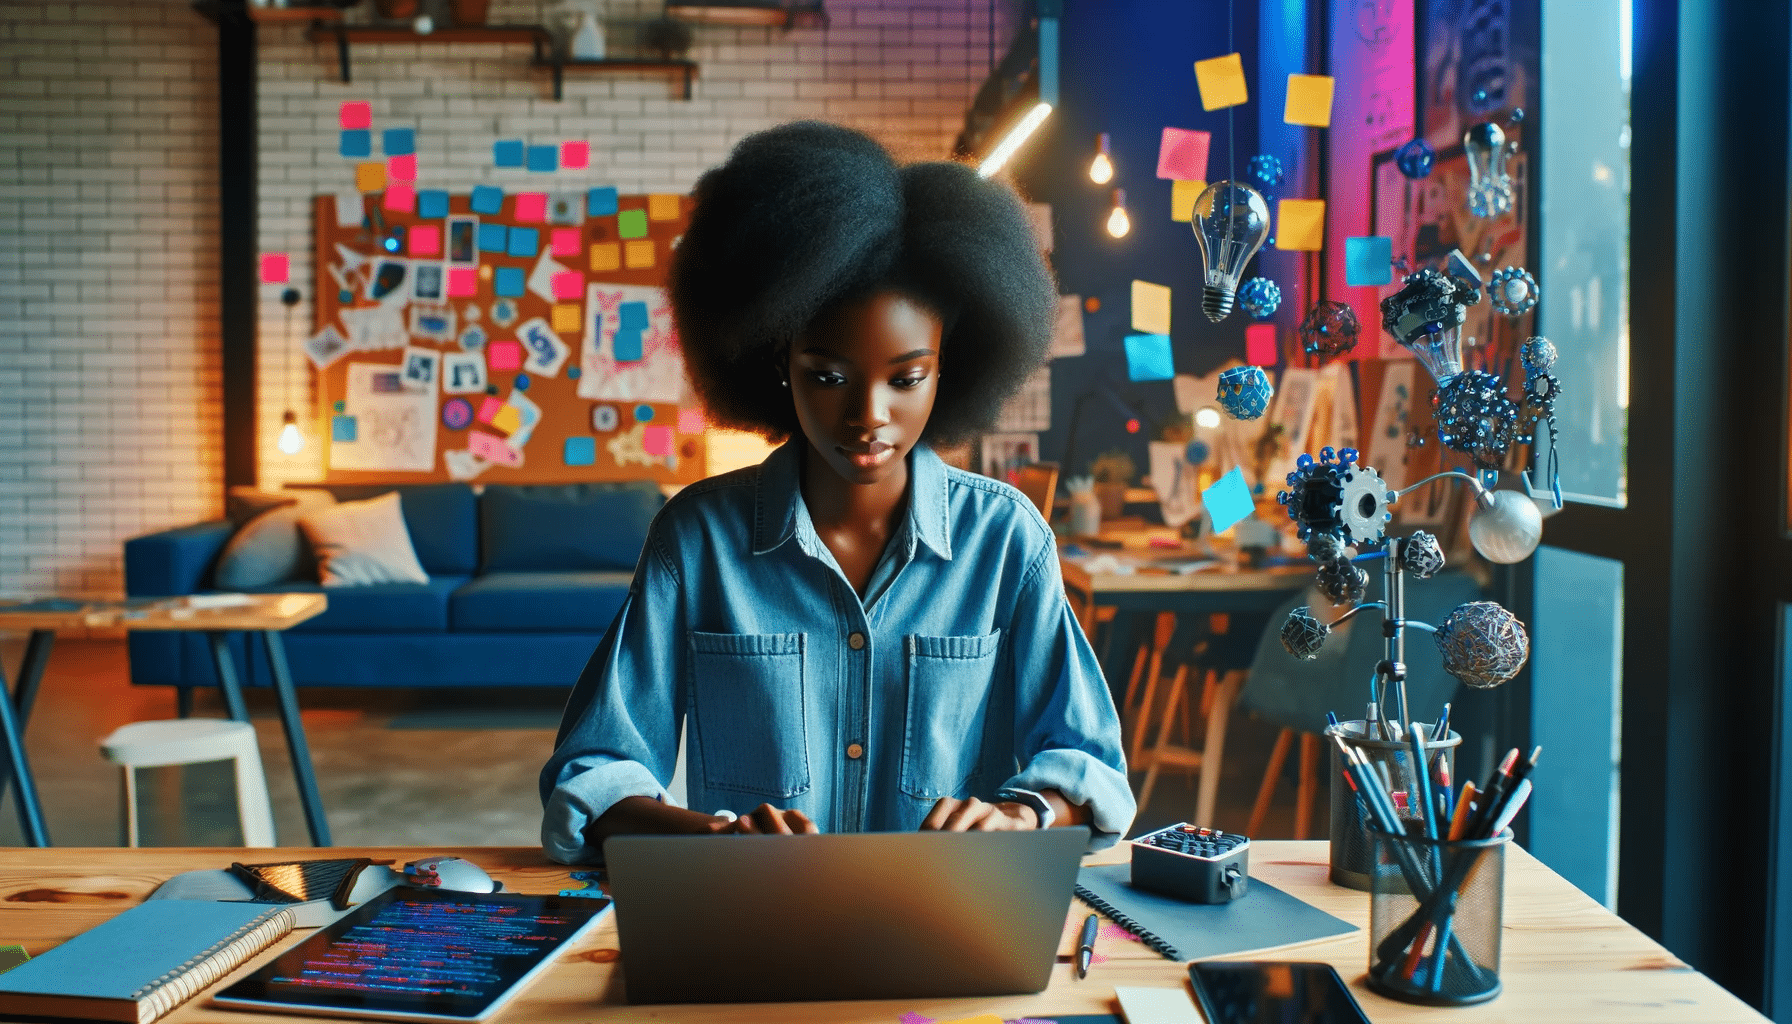 Une jeune femme noire travaillant comme ingénieure de prompt dans un espace de travail créatif et technologique, tapant un prompt sur son ordinateur portable.